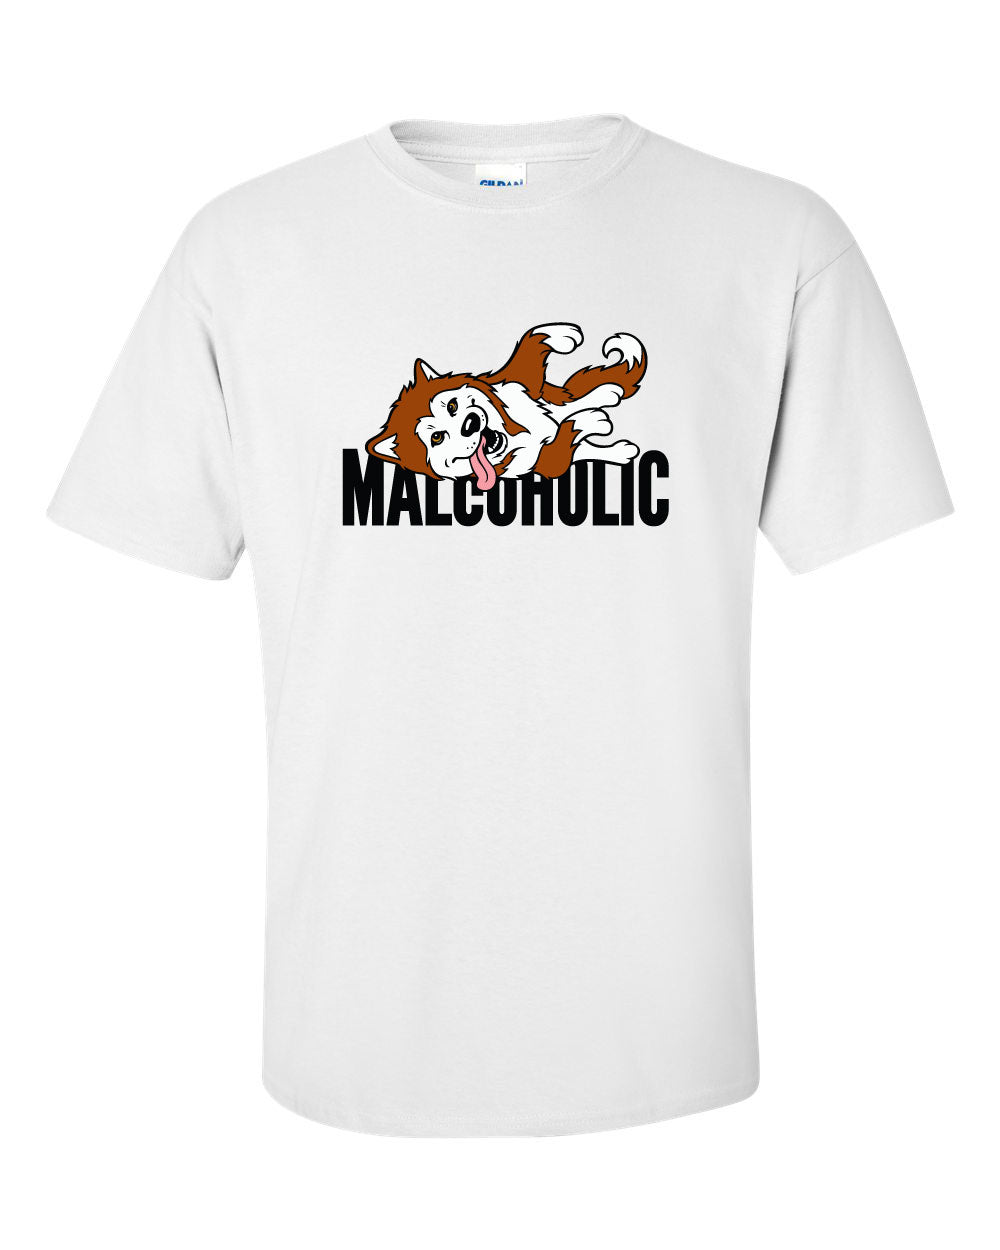 Malcoholic - Alaskan Malamute T-Shirt